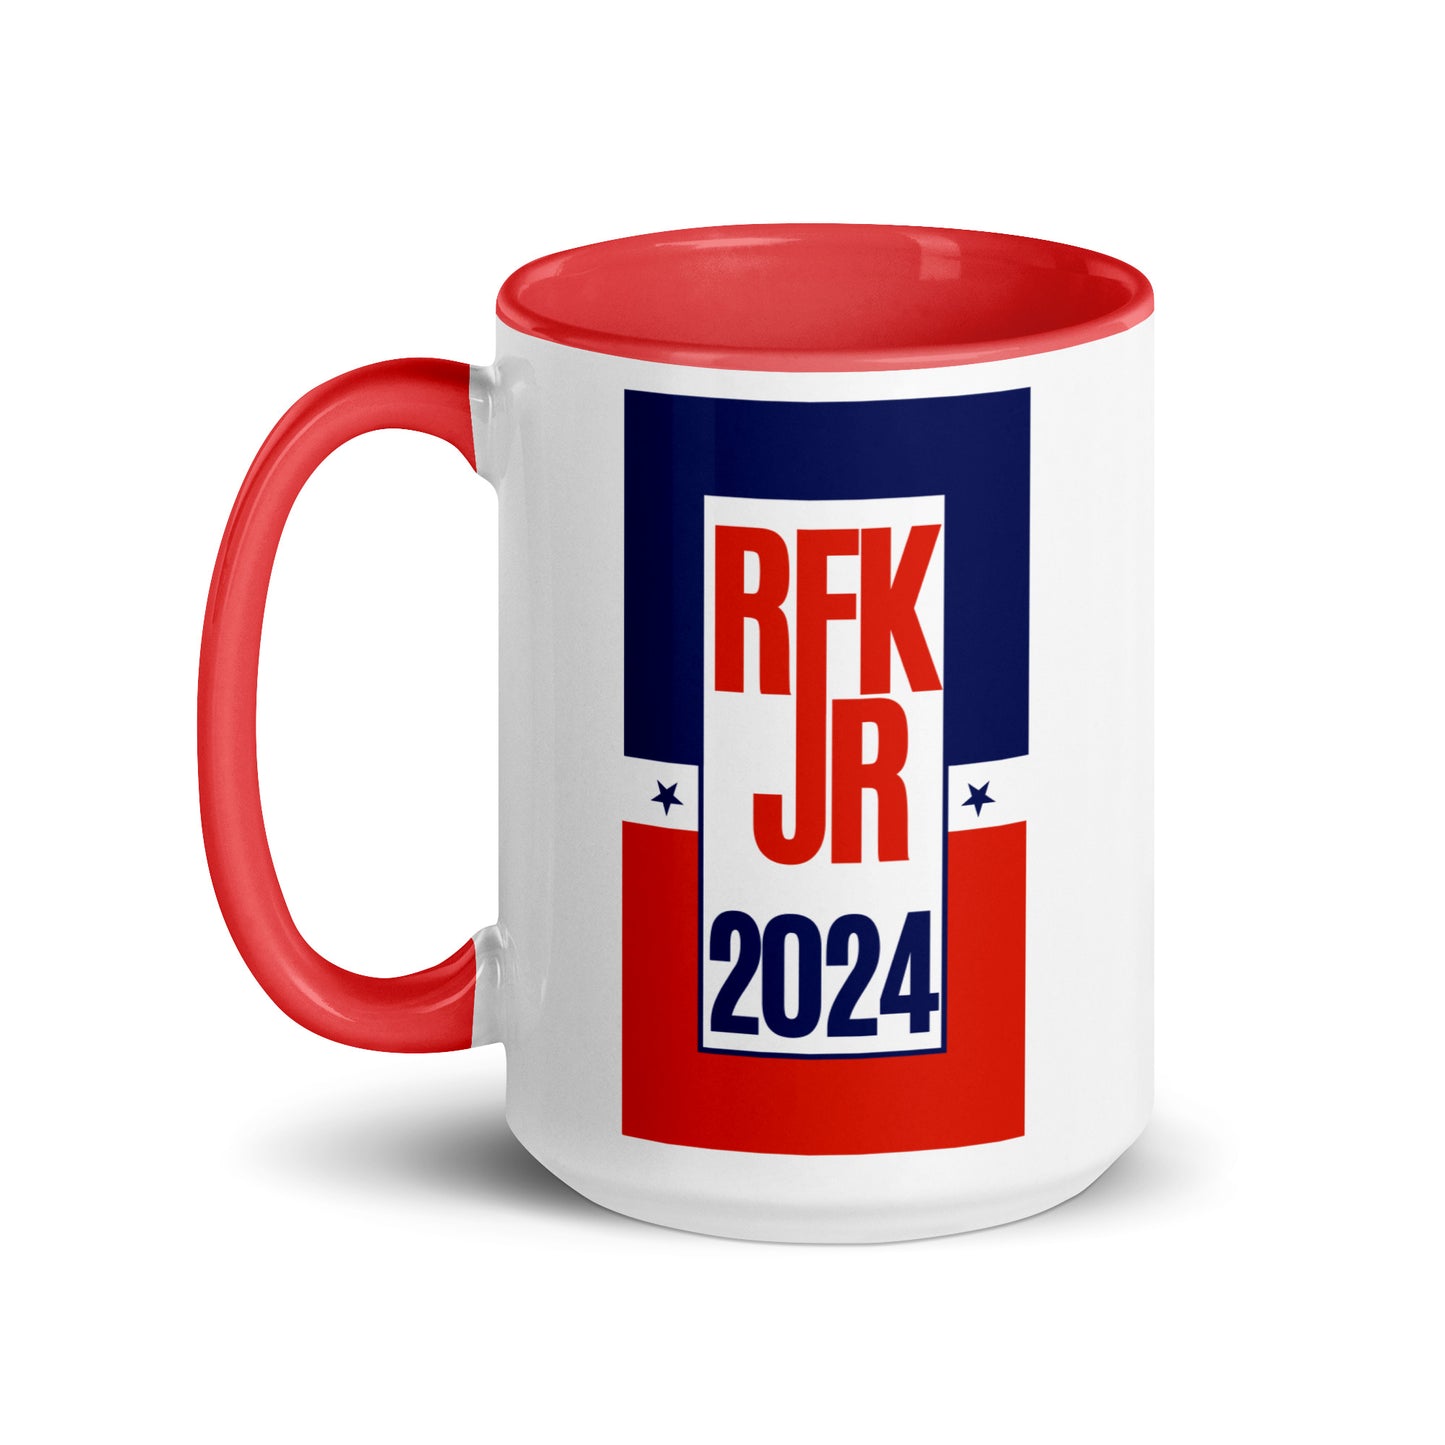 Retro RFK Jr. 2024 Mug